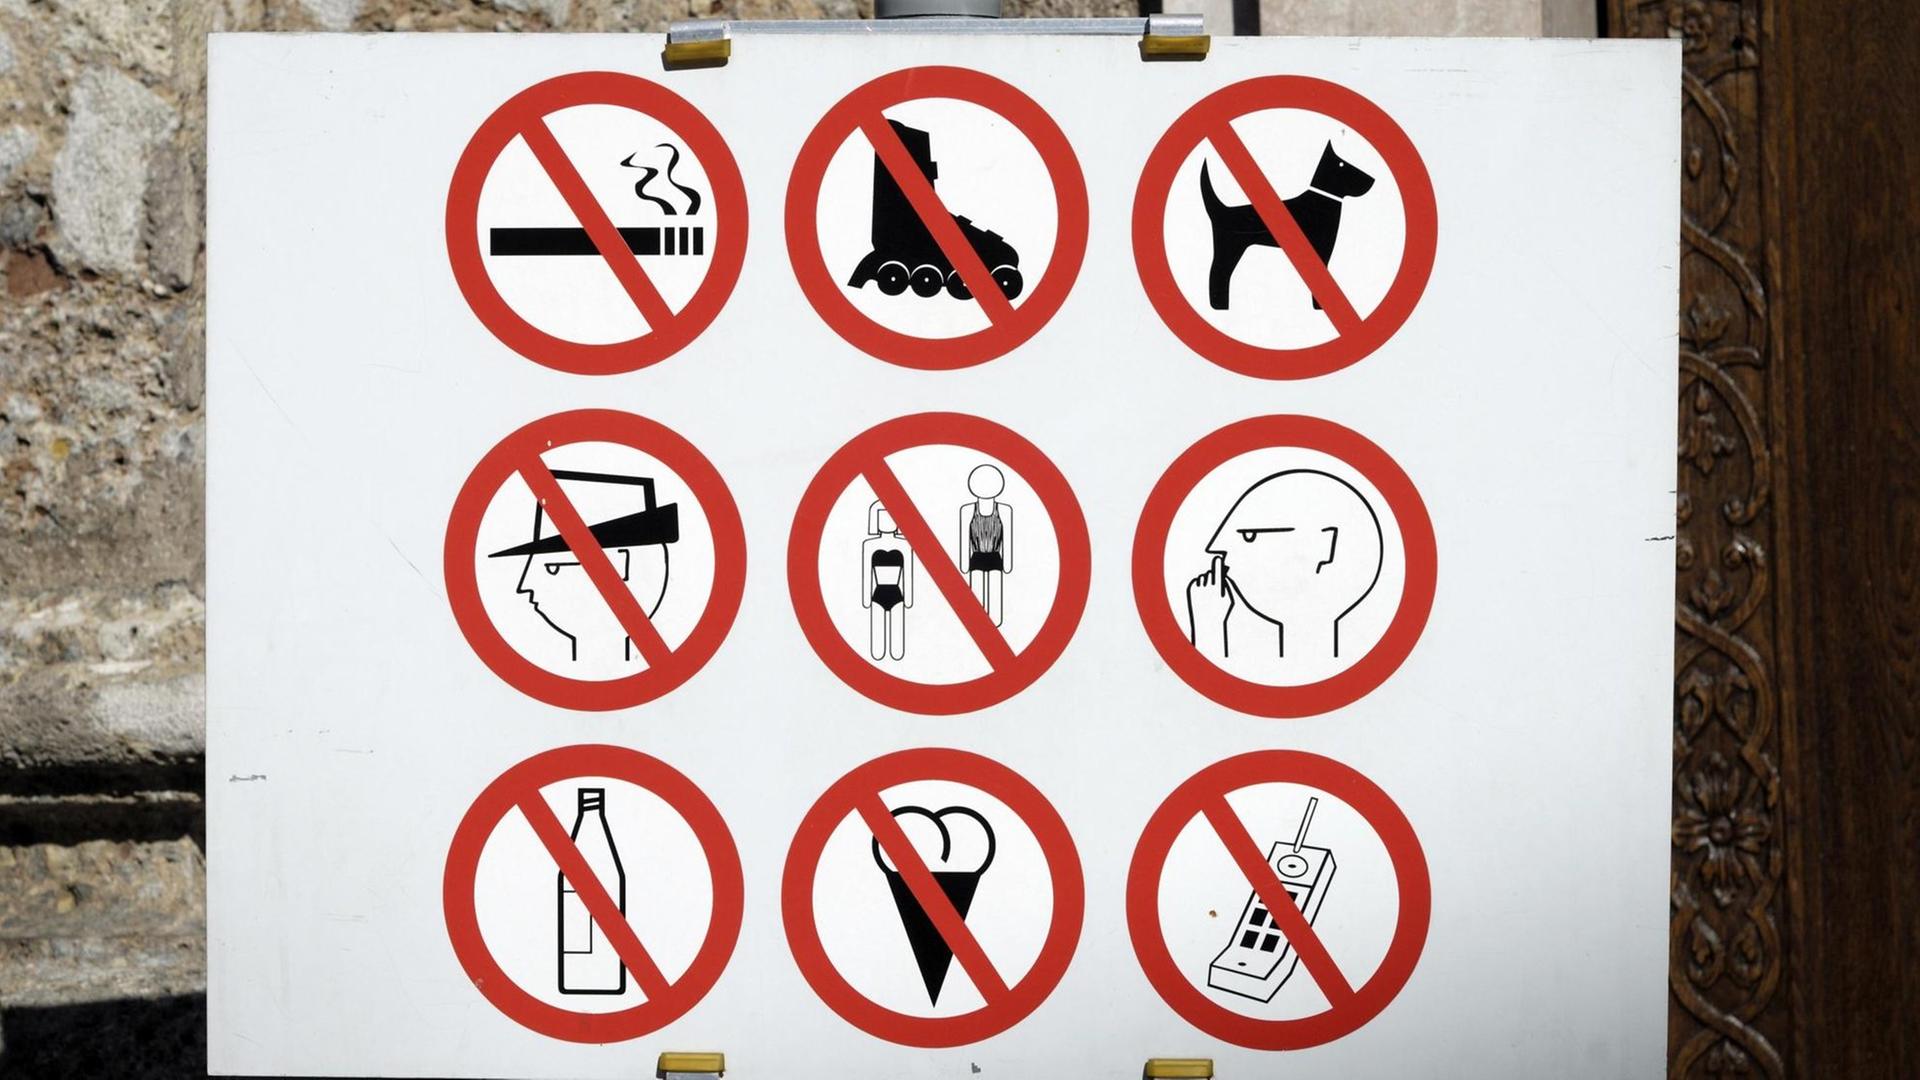 Das Verbotsschild vor dem Dom zu St. Jakob in Innsbruckverbietet: Rauchen, Inlineskaten, Hunde, Hüte, Badekleidung, Flaschen, Eis und Handys. Außerdem wird dazu aufgefordert, ruhig zu sein.